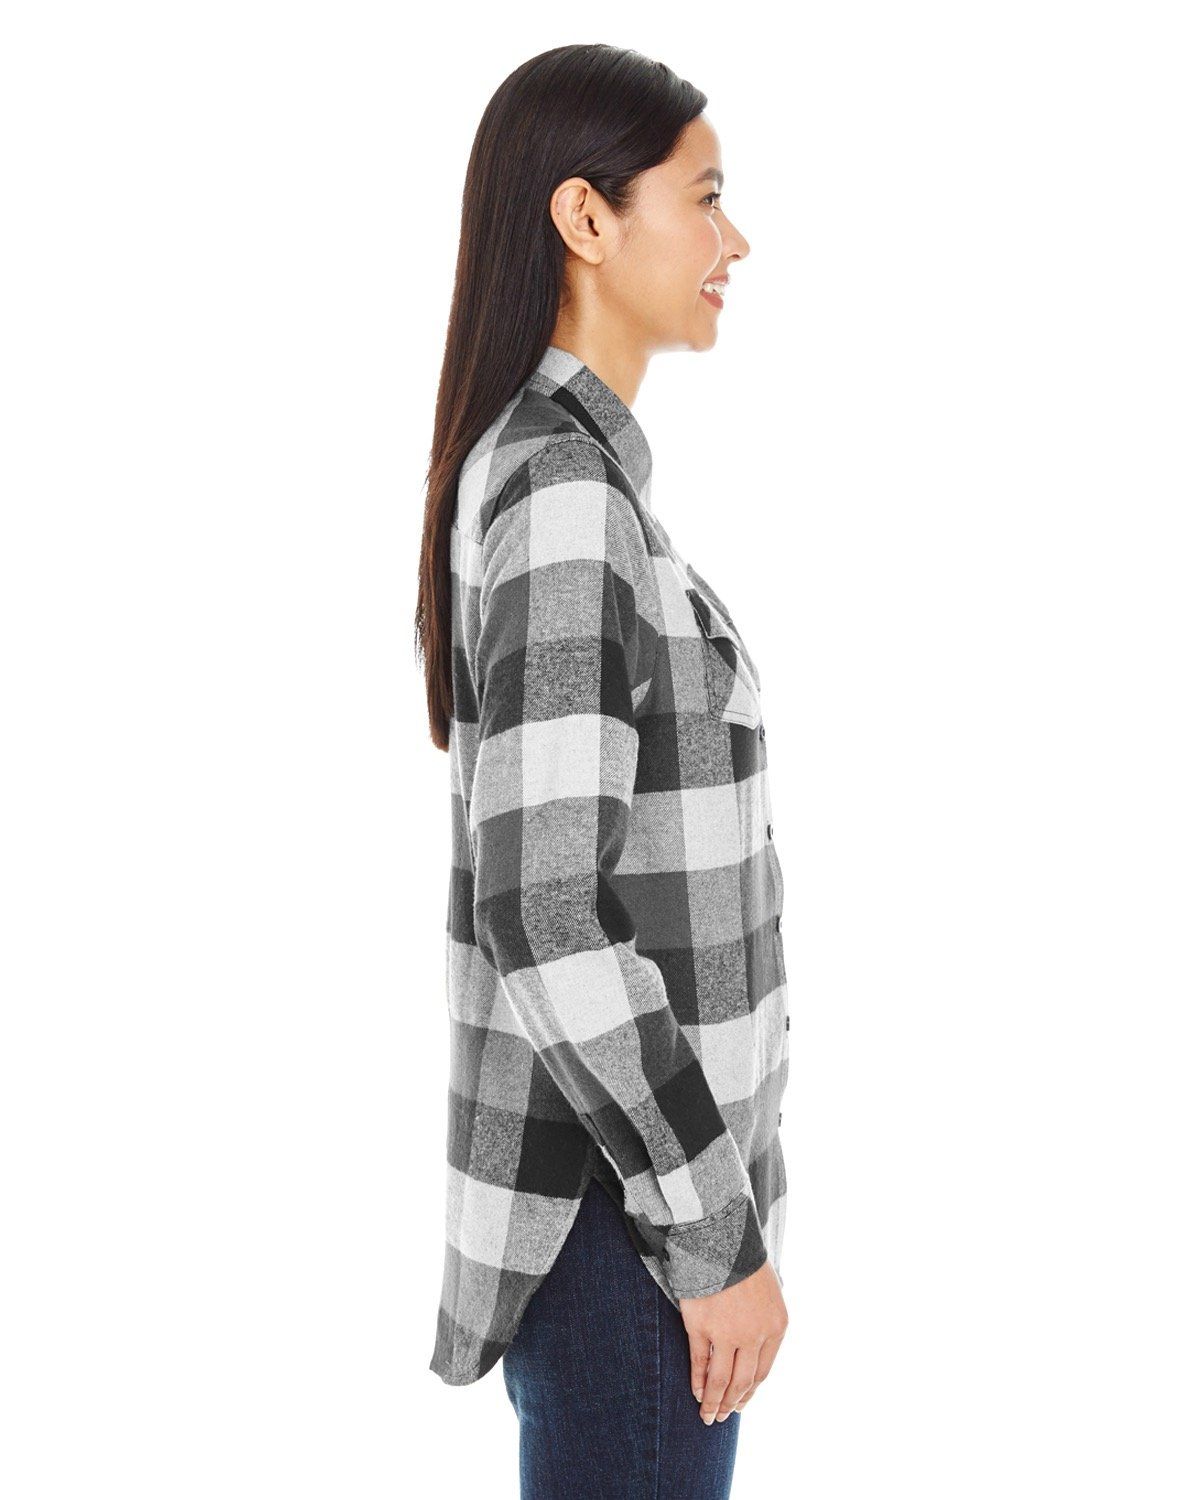 'Burnside 5210 Ladies Plaid Flannel Shirt'